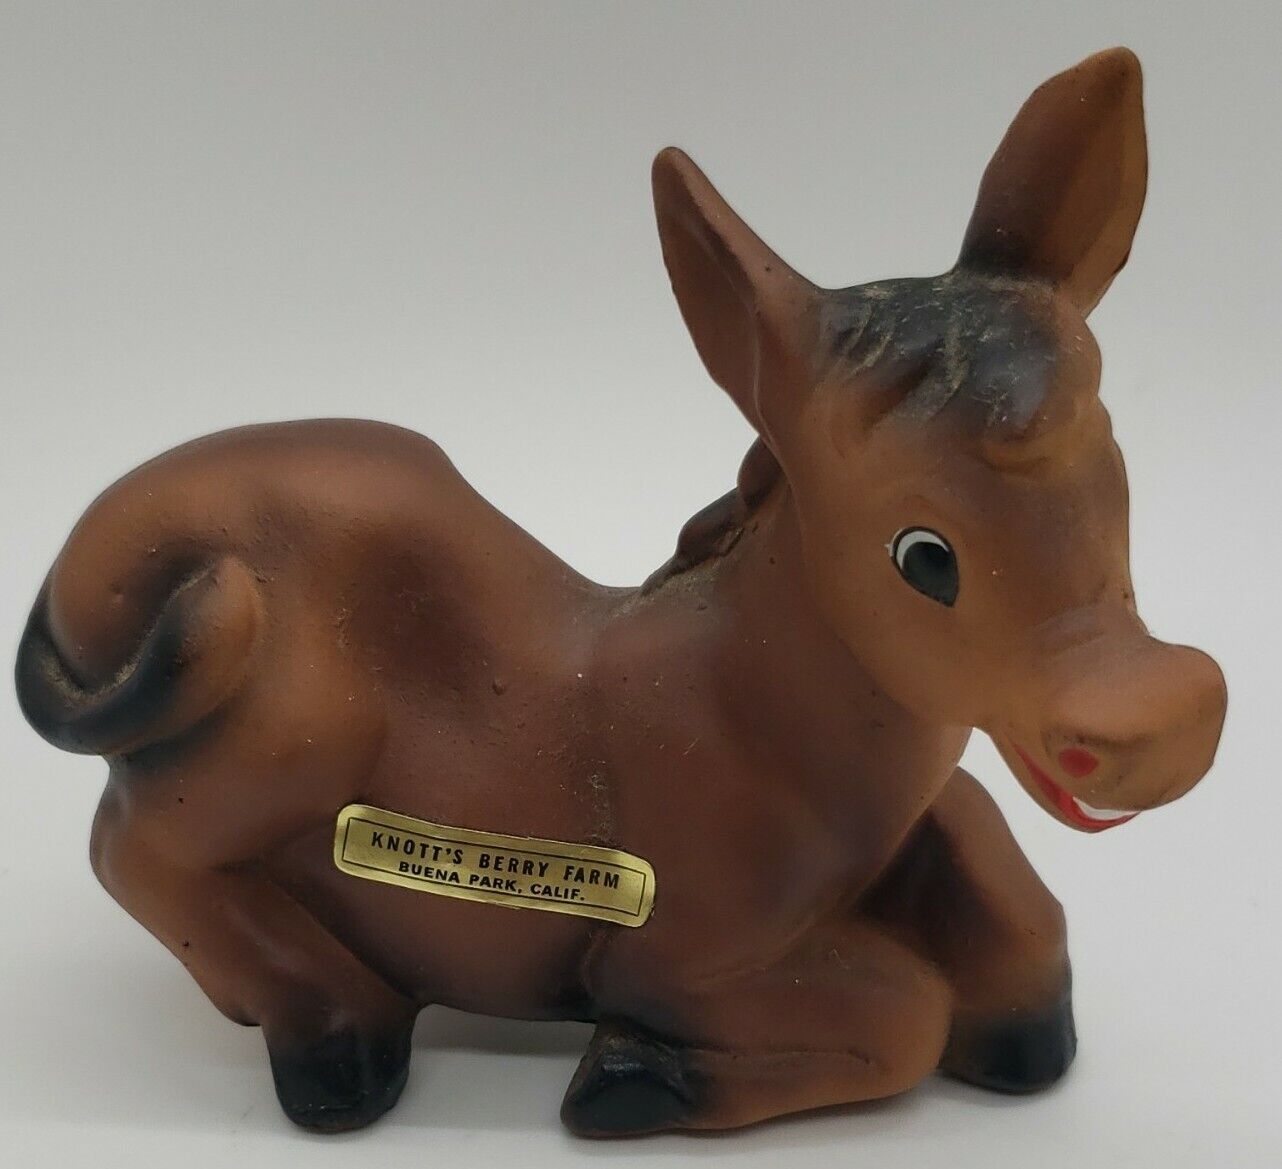 Vintage Mark Exclusive Knott's Berry Farm Buena Park, CA souvenir HORSE figurine